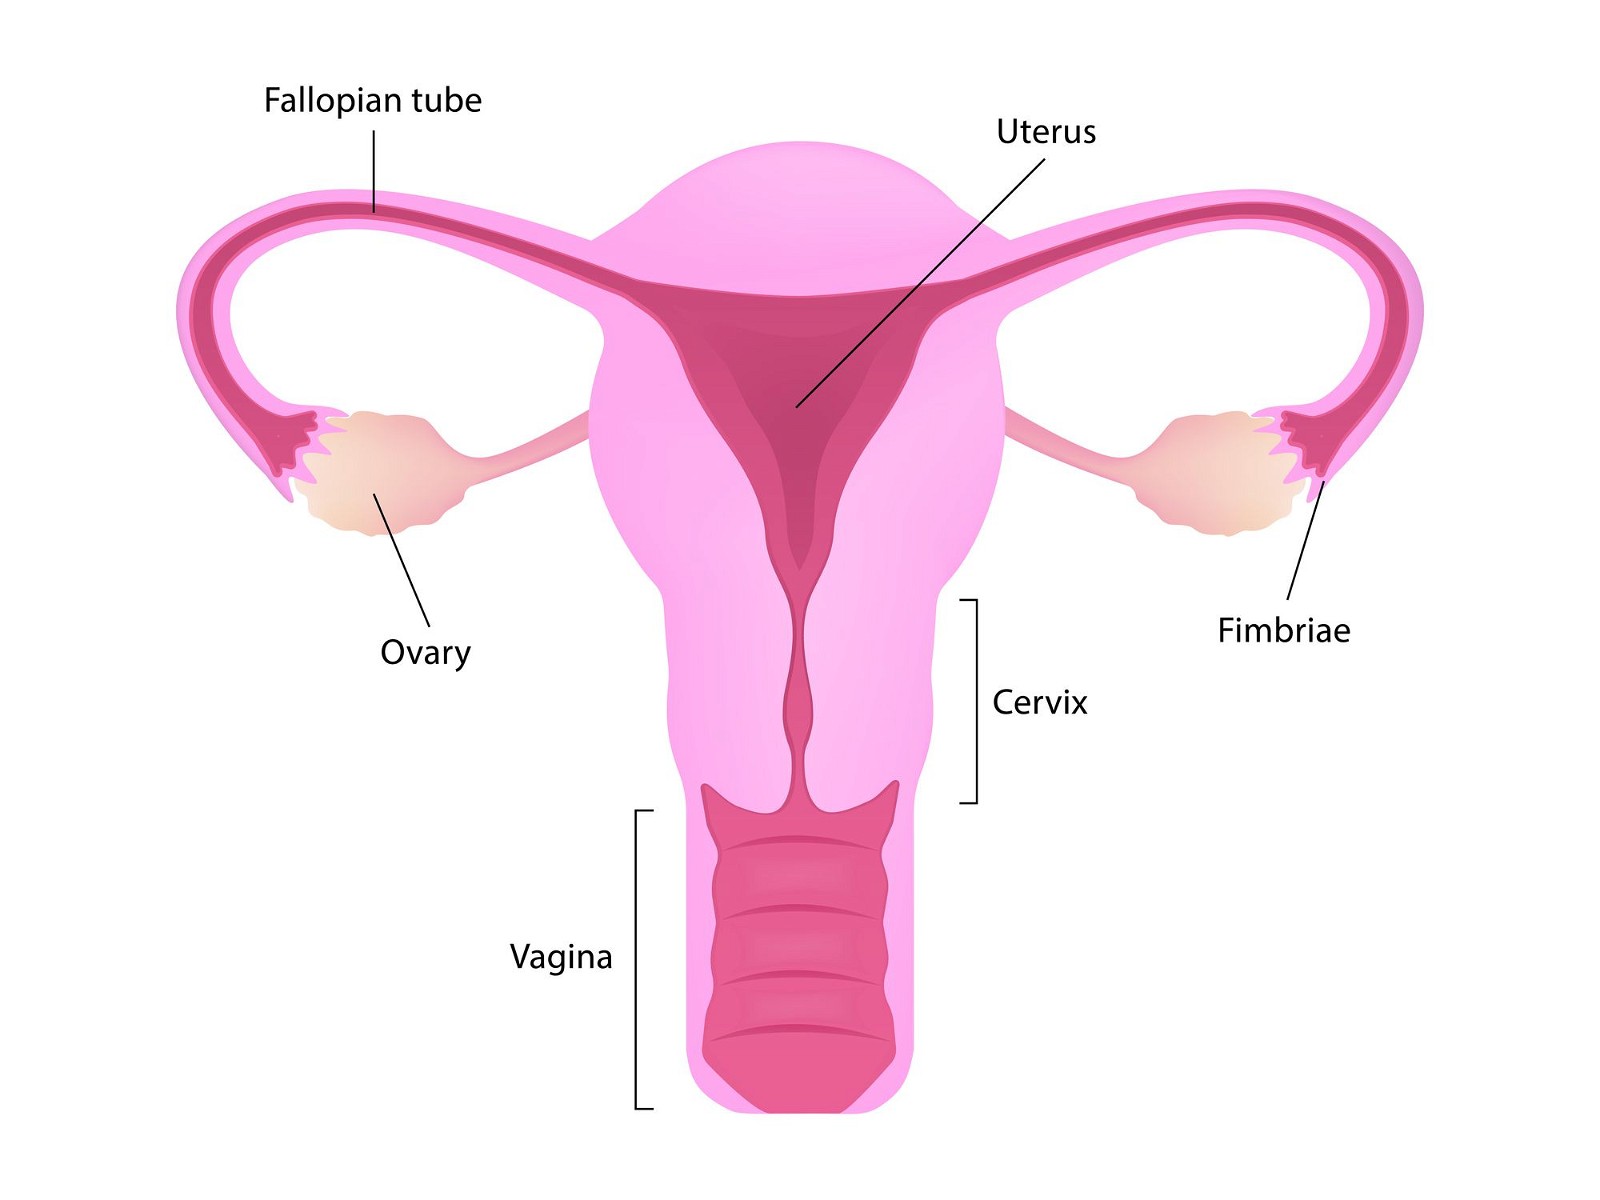 Bất kỳ tình trạng hay bệnh lý nào liên quan đến buồng trứng (ovary) đều có thể gây giảm nồng độ estrogen